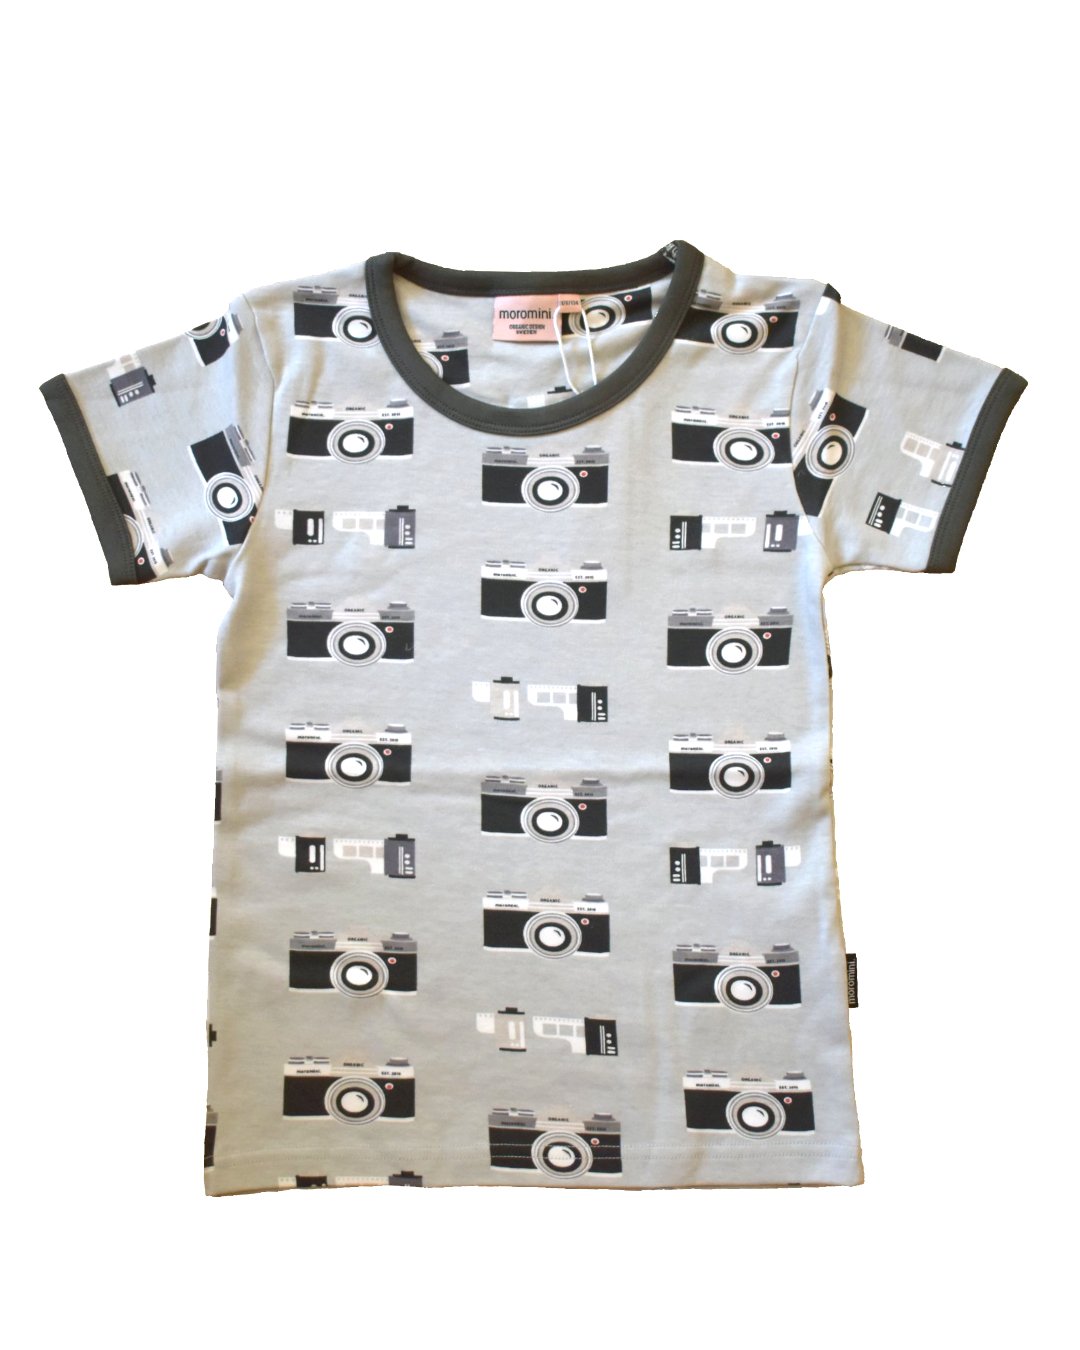 T-Shirt mit Fotoapparate aus Biobaumwolle von moromini